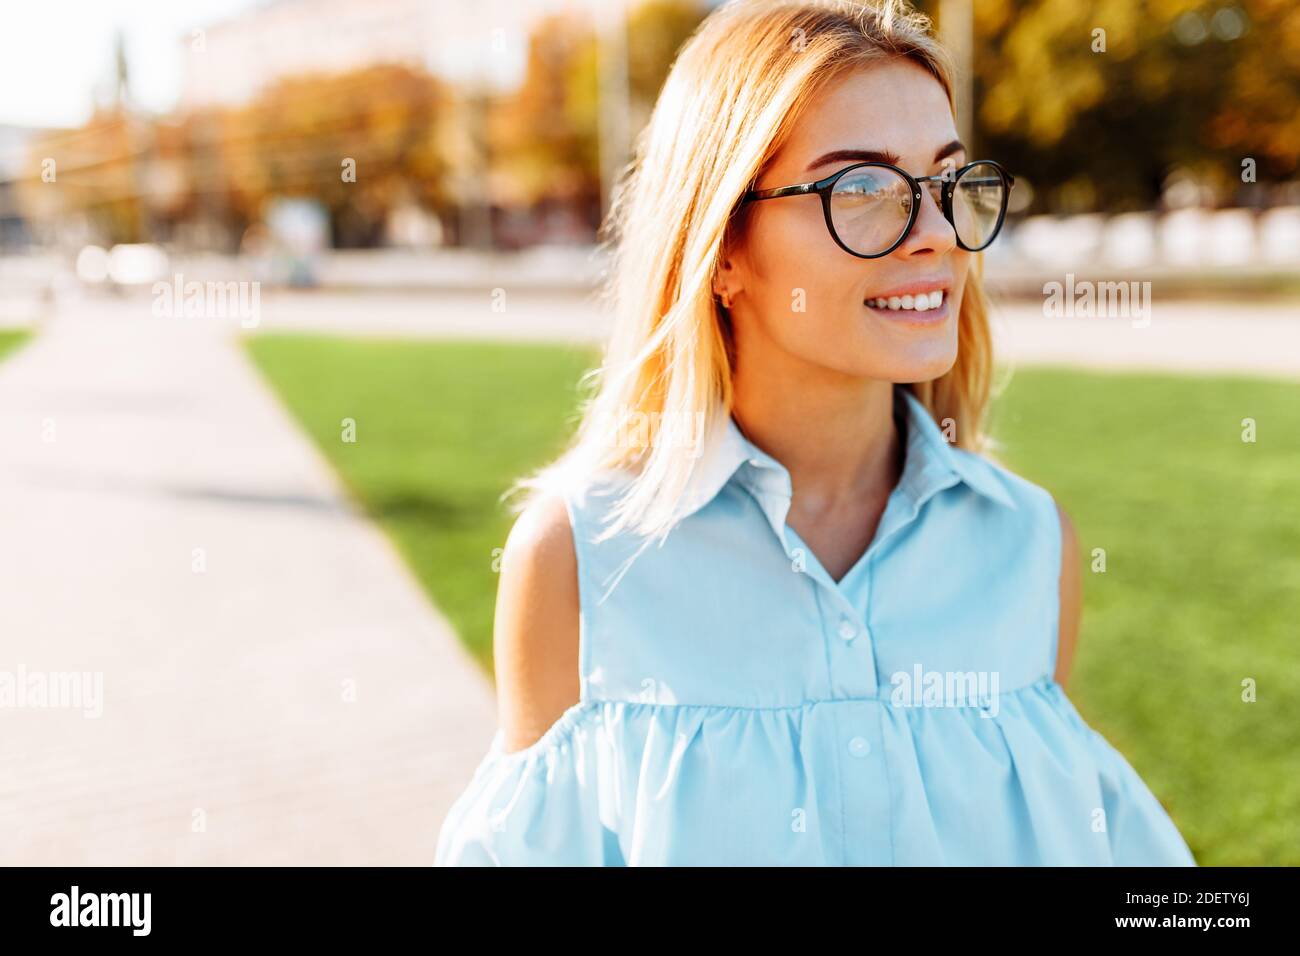 Ritratto di una bella ragazza con occhiali, una studentessa che passeggiava nel Parco, di buon umore Foto Stock